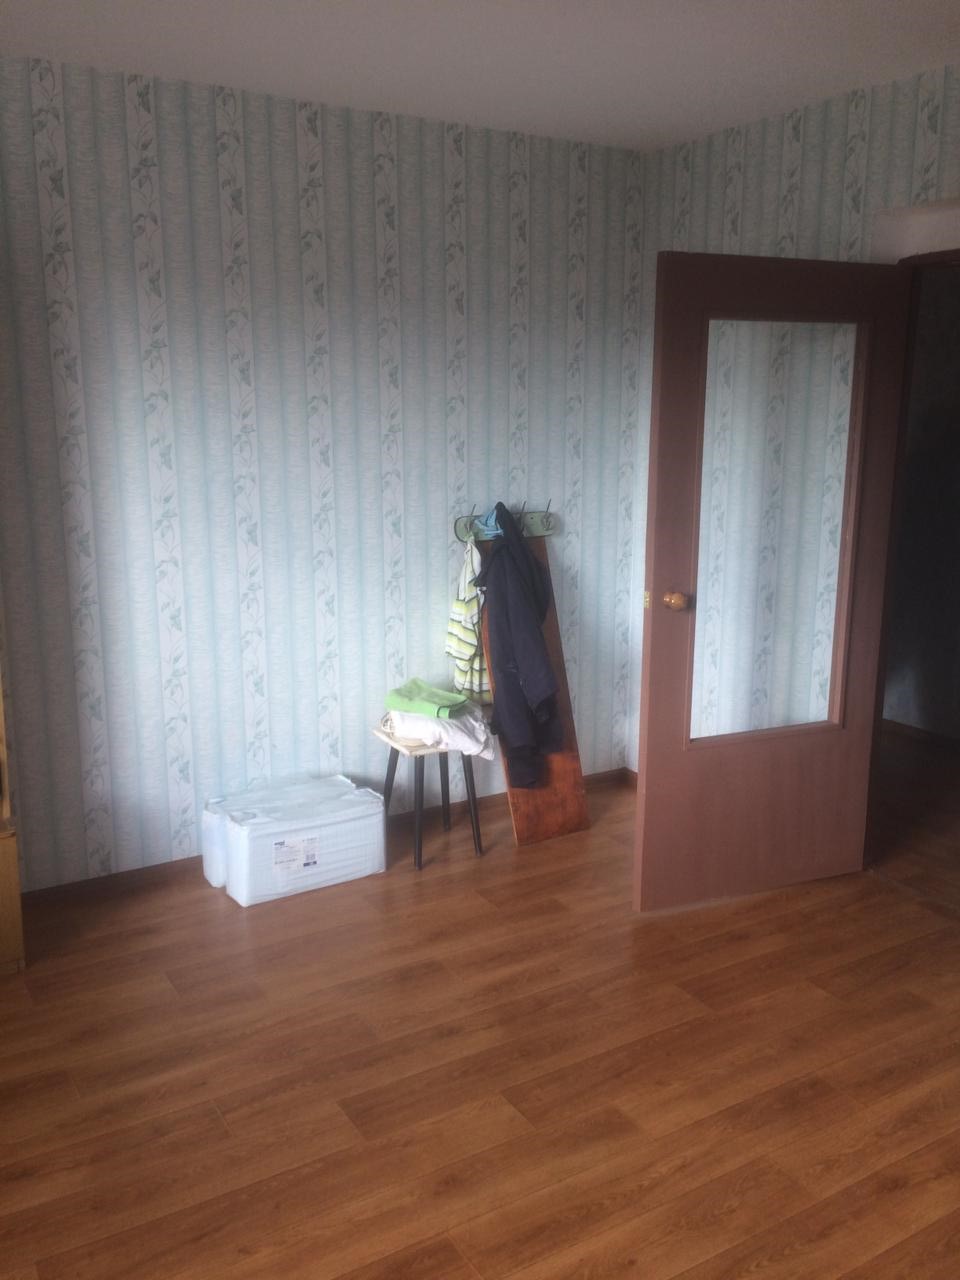 Продается отличная квартира в новом доме в г. Волжске. Квартира большая, светлая, очень теплая.Окна стеклопакет,... - 1